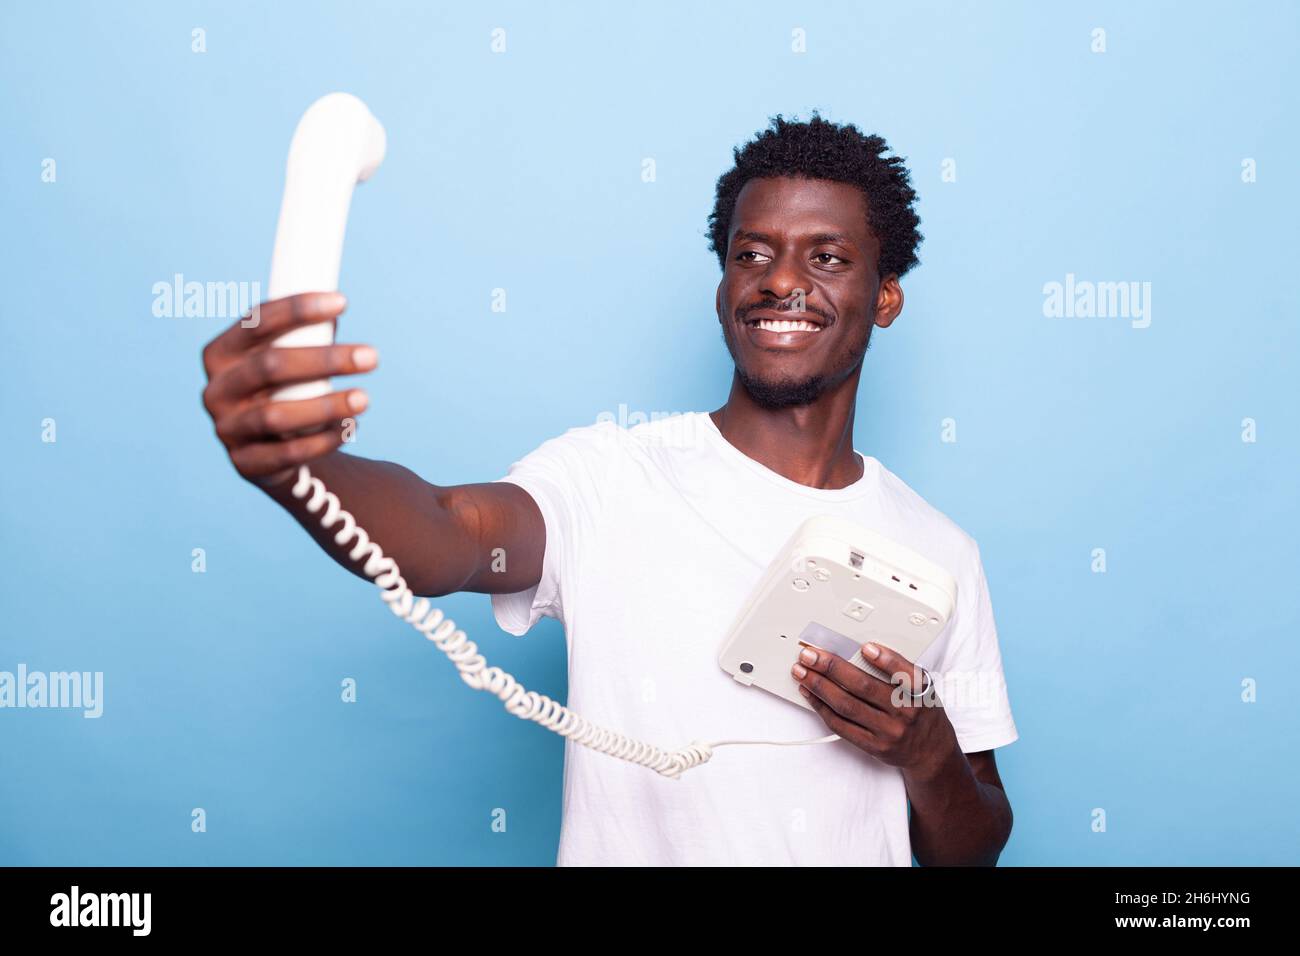 Uomo afroamericano che finge di prendere selfie sul vecchio telefono fisso. Persona nera che si diverte con il telefono retrò, scherzando a scattare foto e sorridendo, usando il telefono vintage in mano Foto Stock